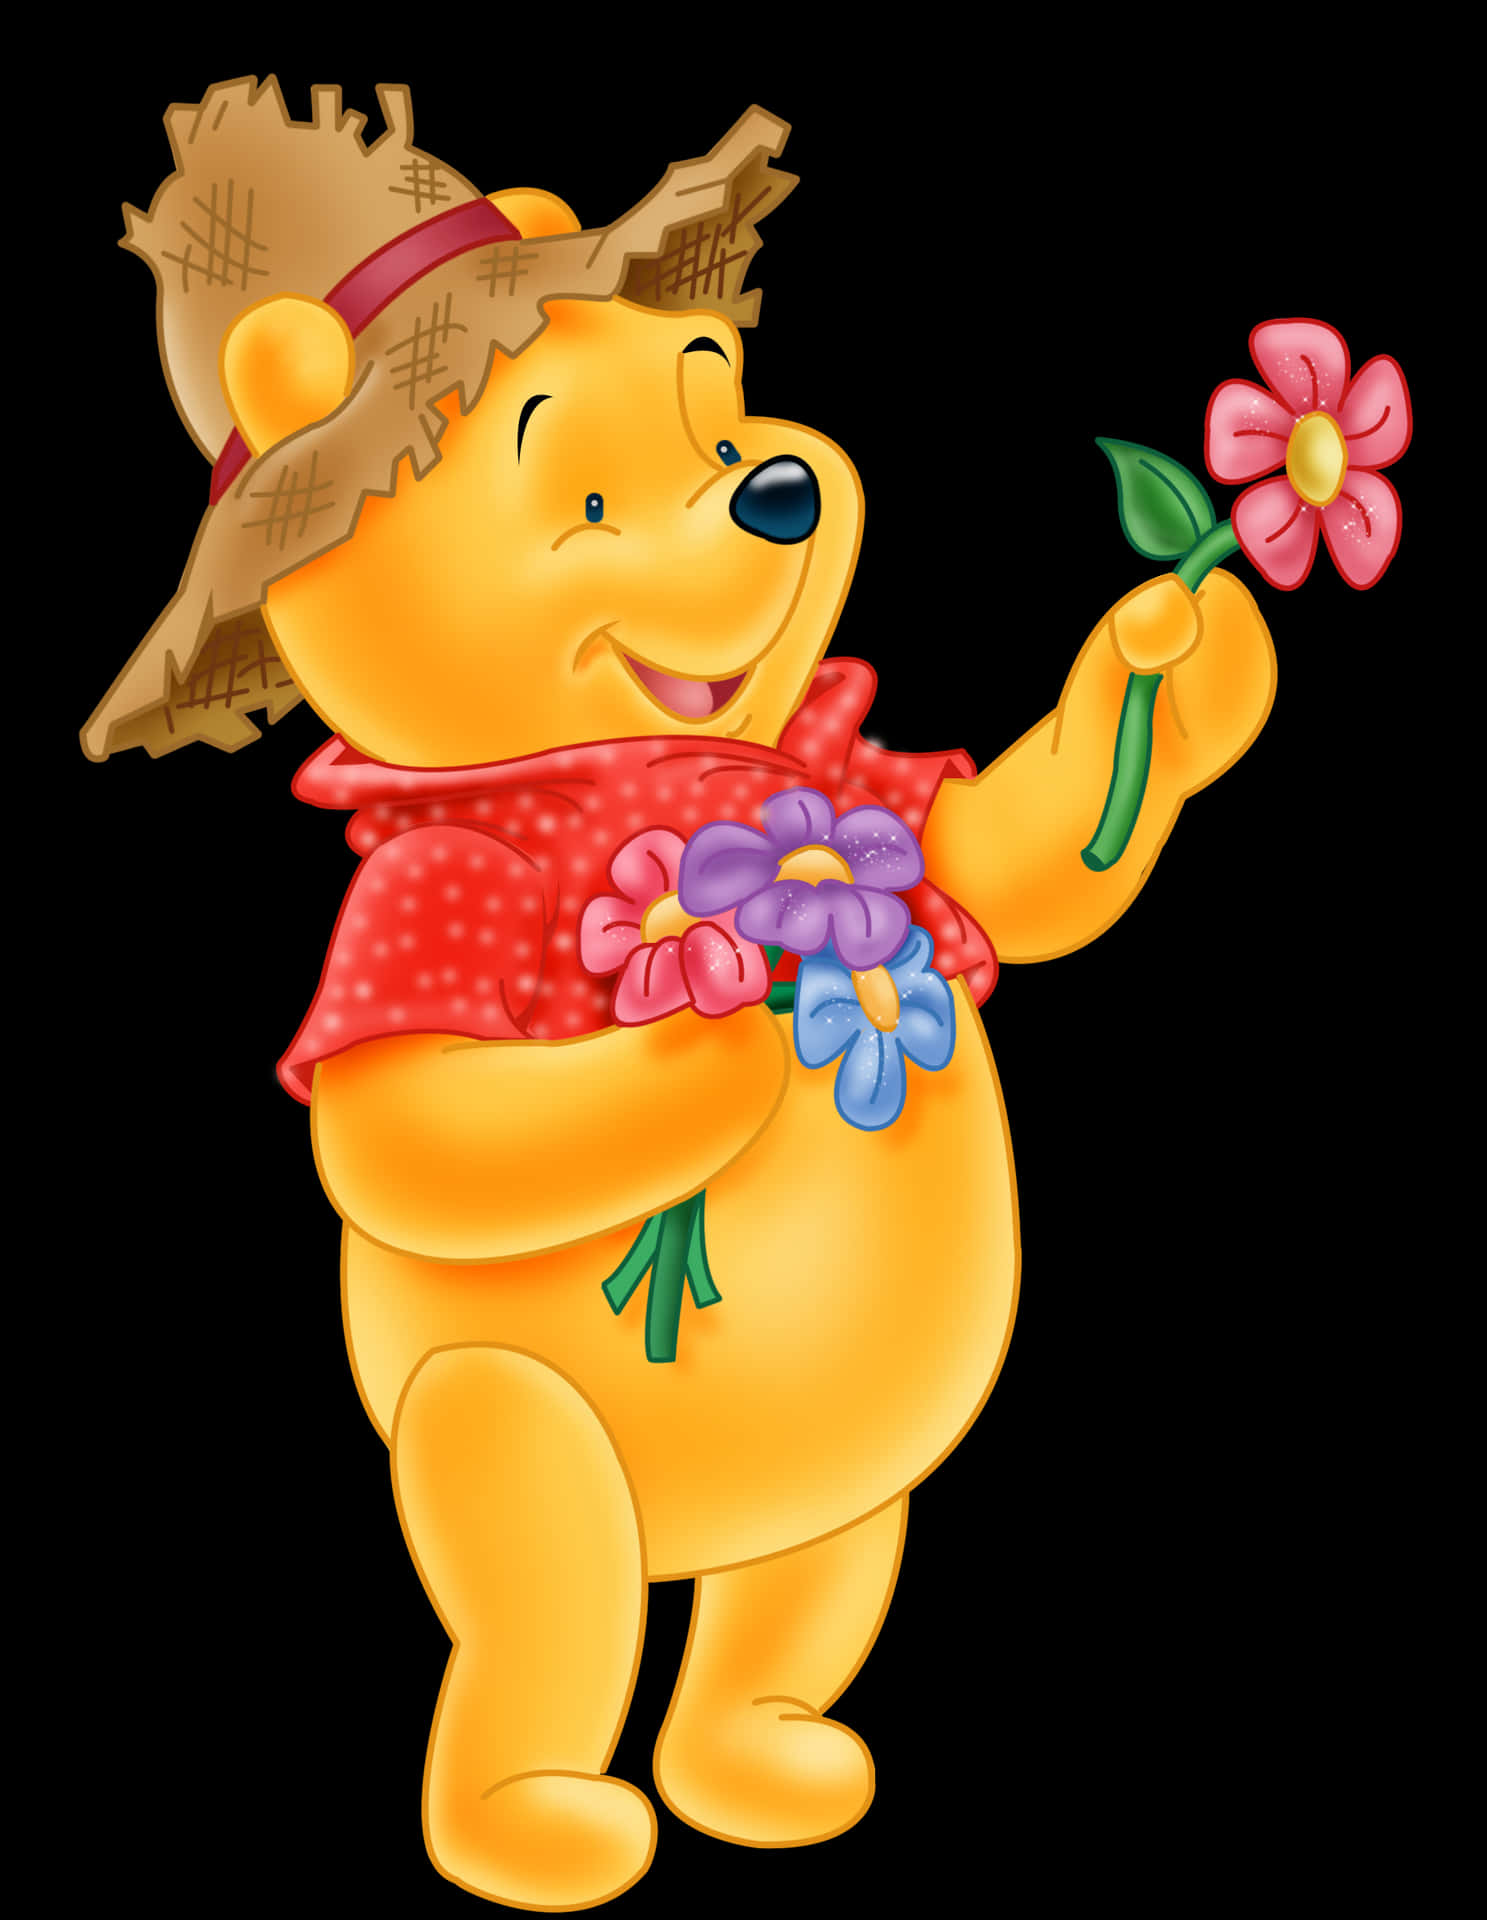 Umolhar Clássico Do Ursinho Pooh Abraçando Seu Amado Teddy Bear.